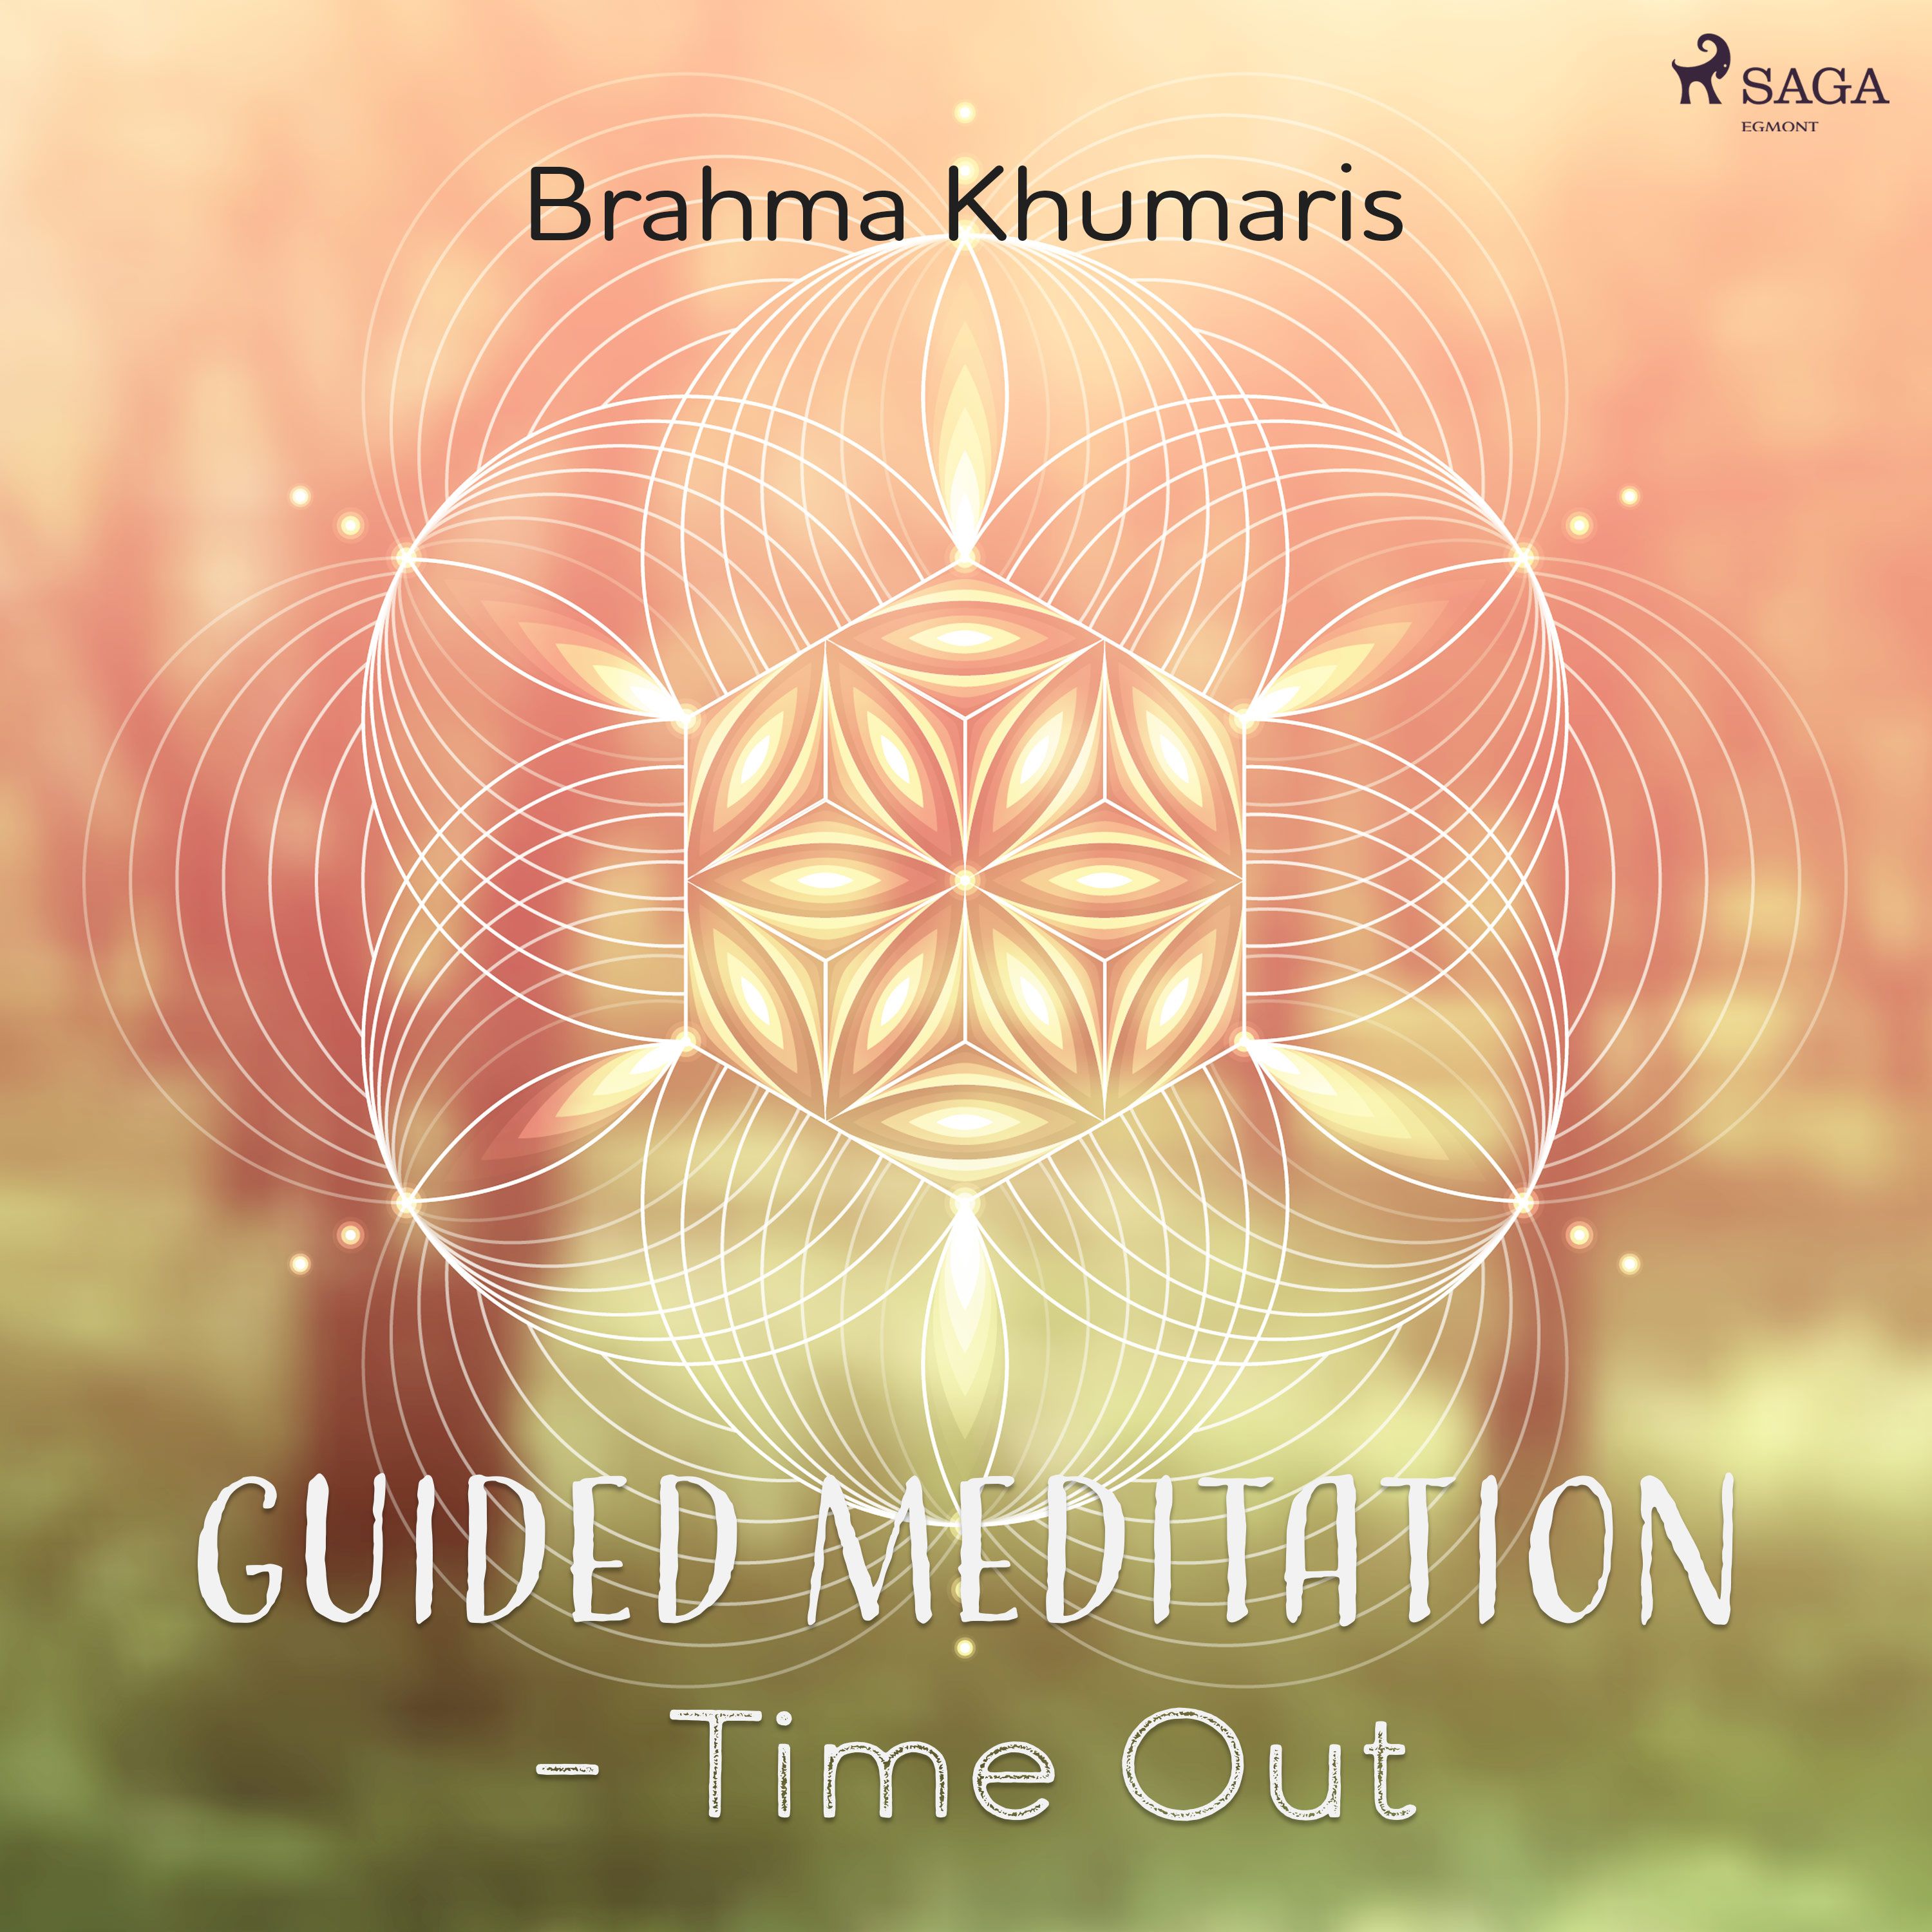 Guided Meditation – Time Out, ljudbok av Brahma Khumaris